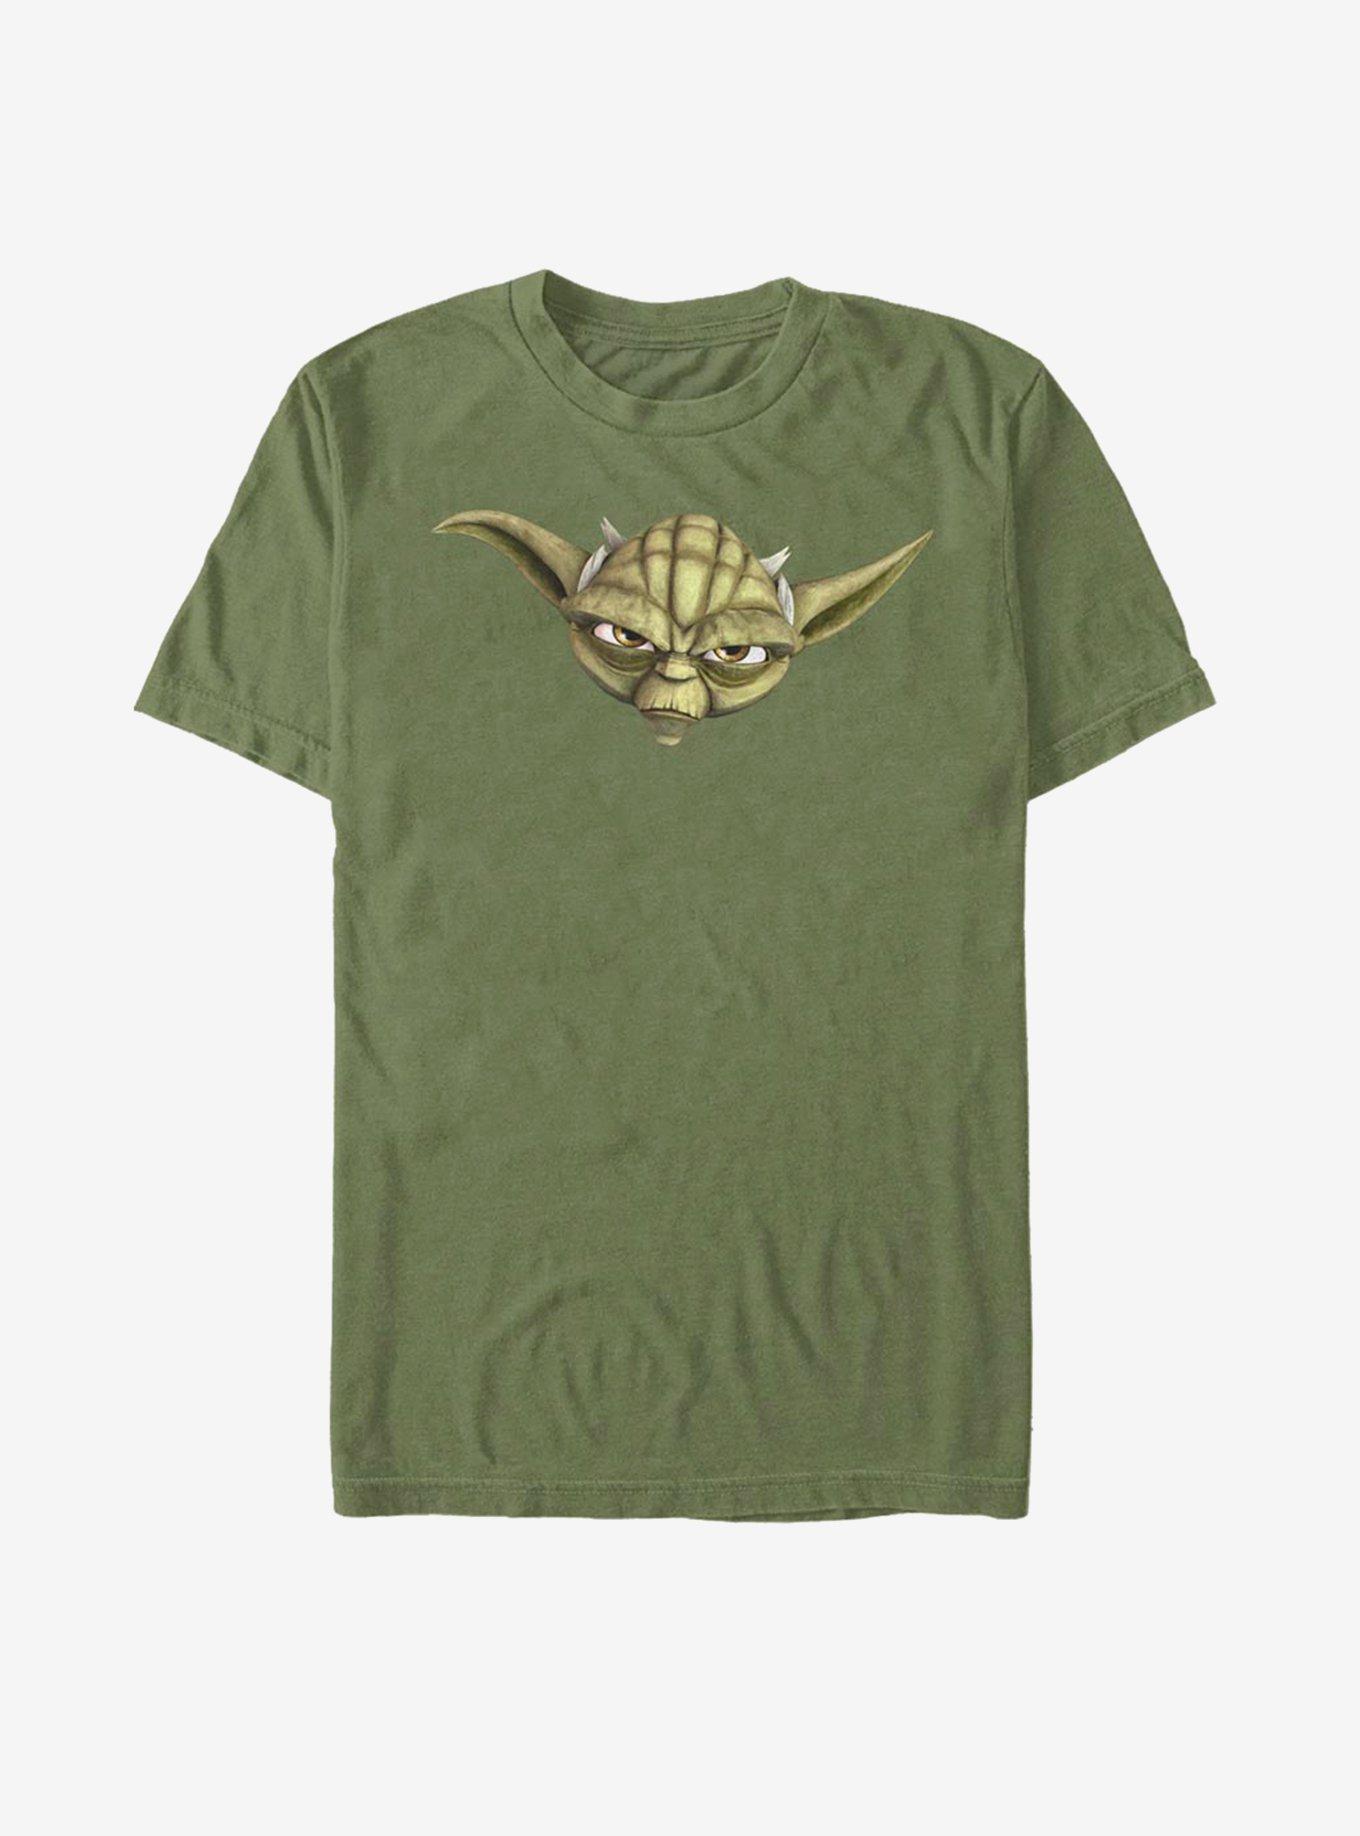 Star Wars: The Clone Wars Yoda Face T-Shirt - GREEN | BoxLunch